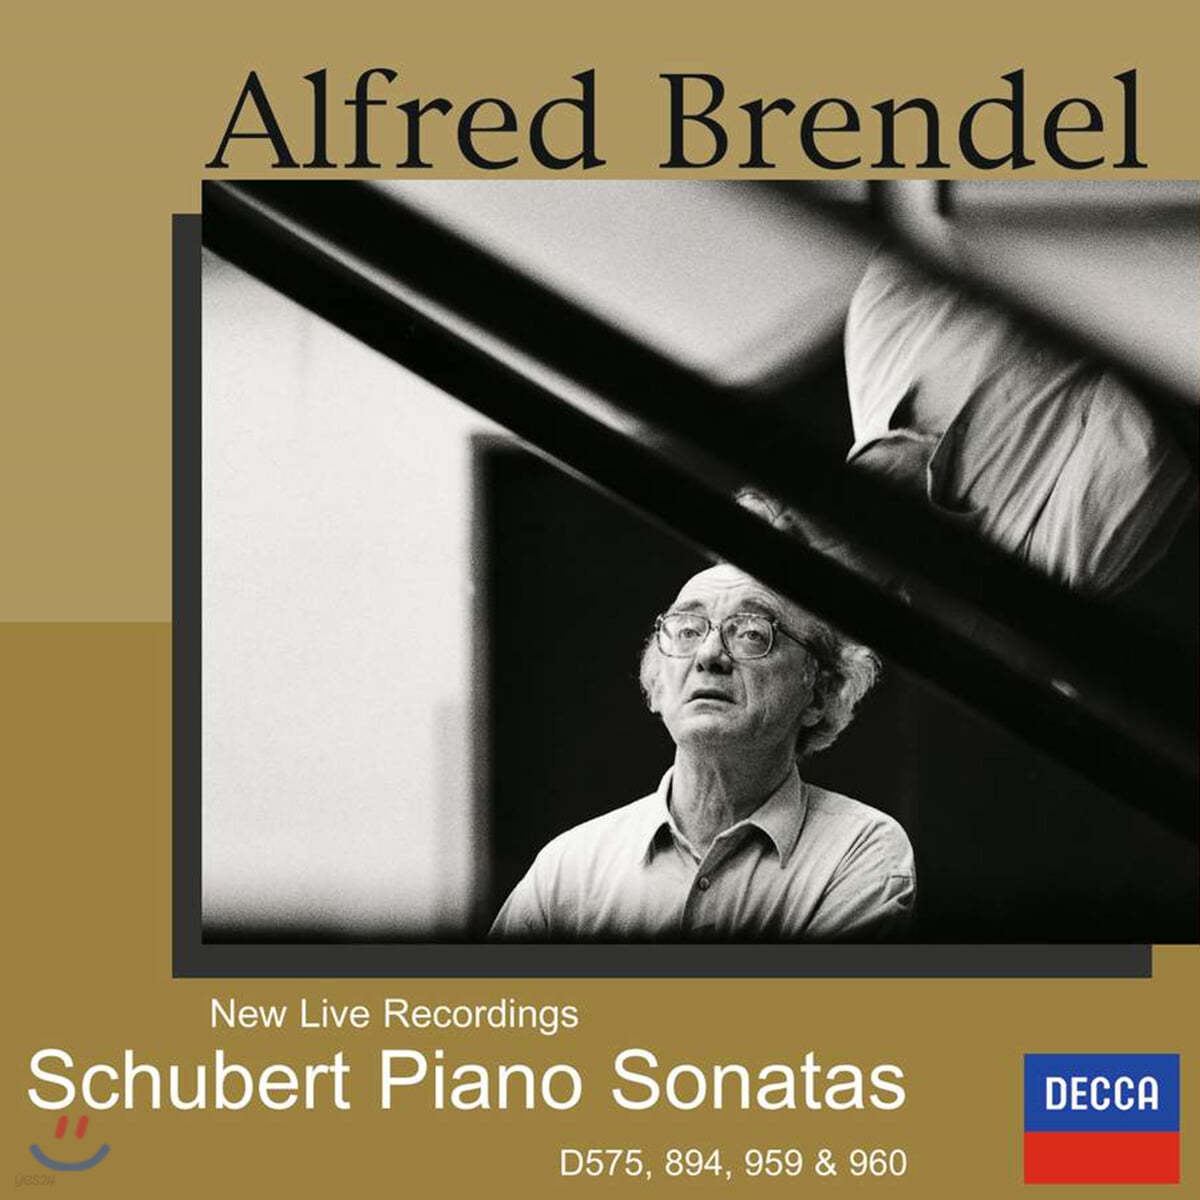 Alfred Brendel 슈베르트: 후기 피아노 소나타 (Schubert: Piano Sonatas)